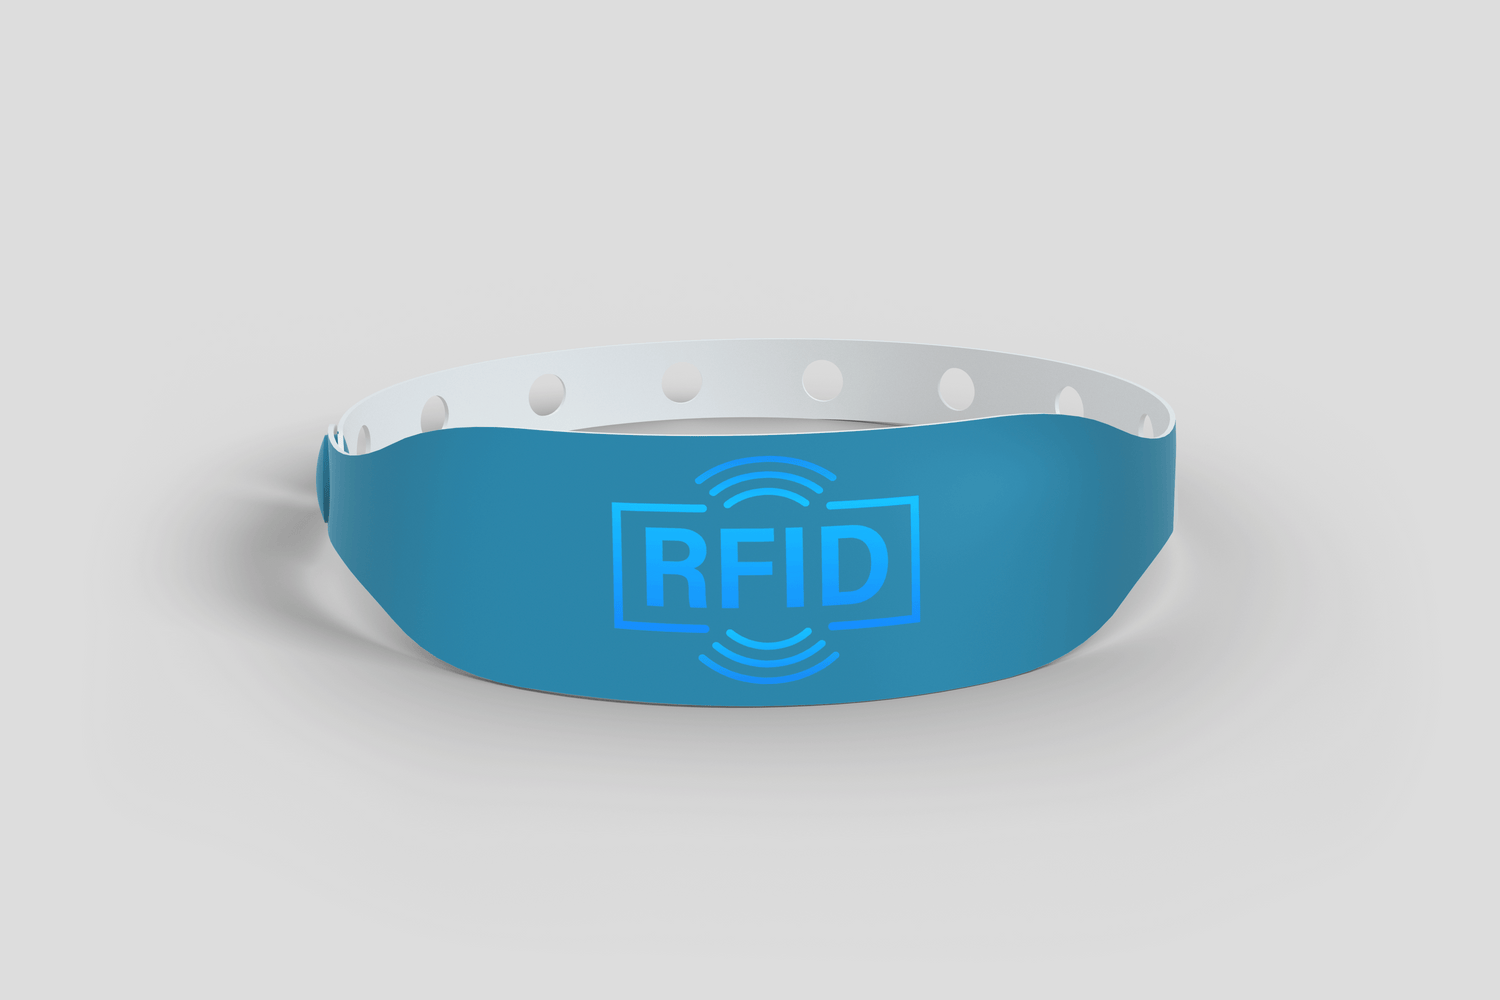 Et rfid-armbånd med blått lys på.